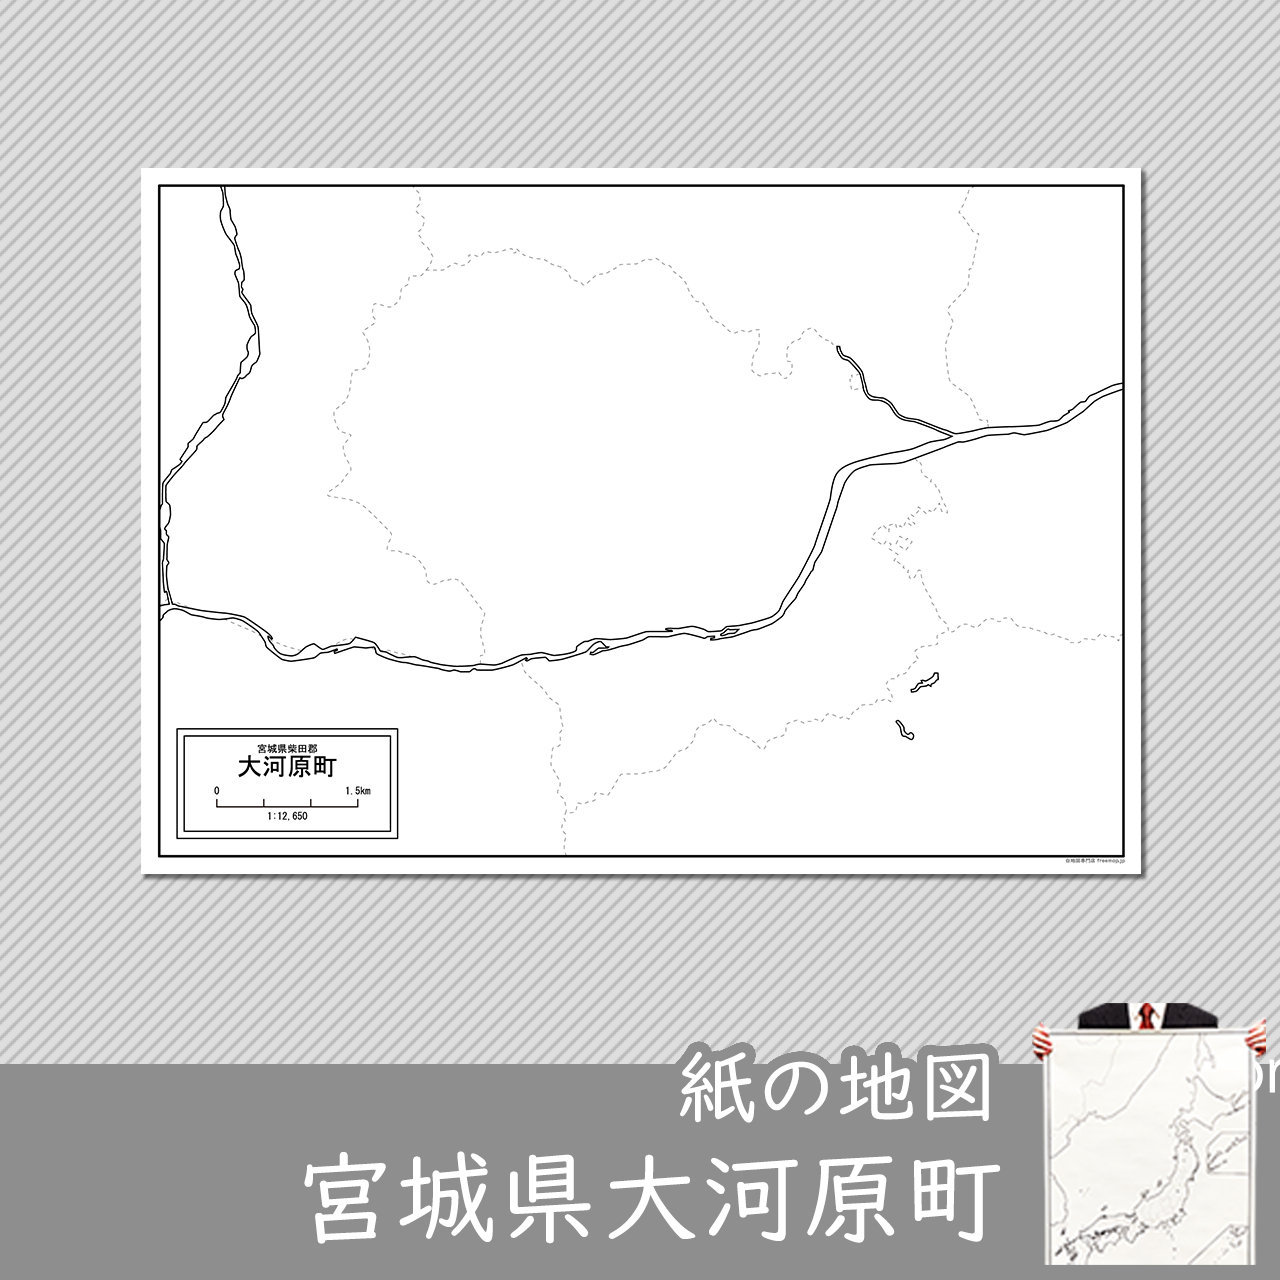 大河原町の紙の白地図のサムネイル